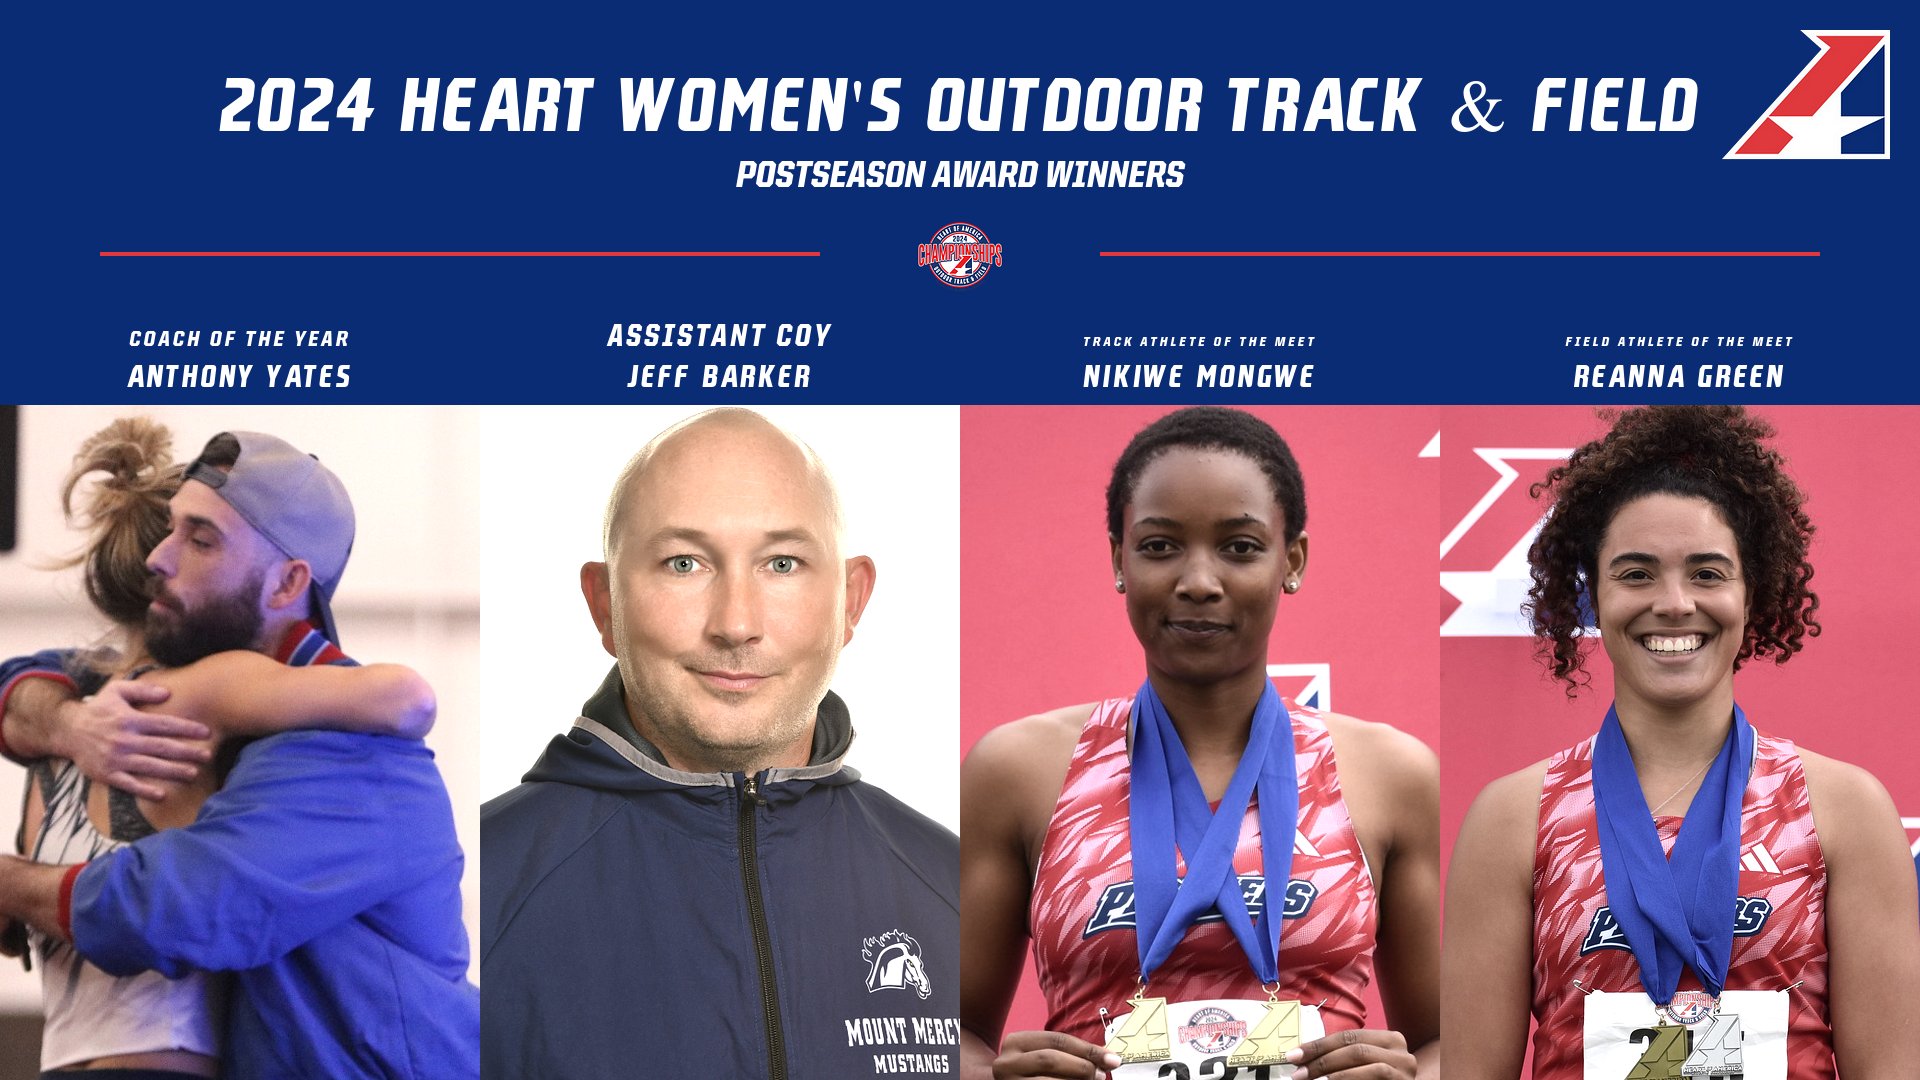 2024 Heart Women’s Outdoor Track & Field Postseason Award Winners Announced